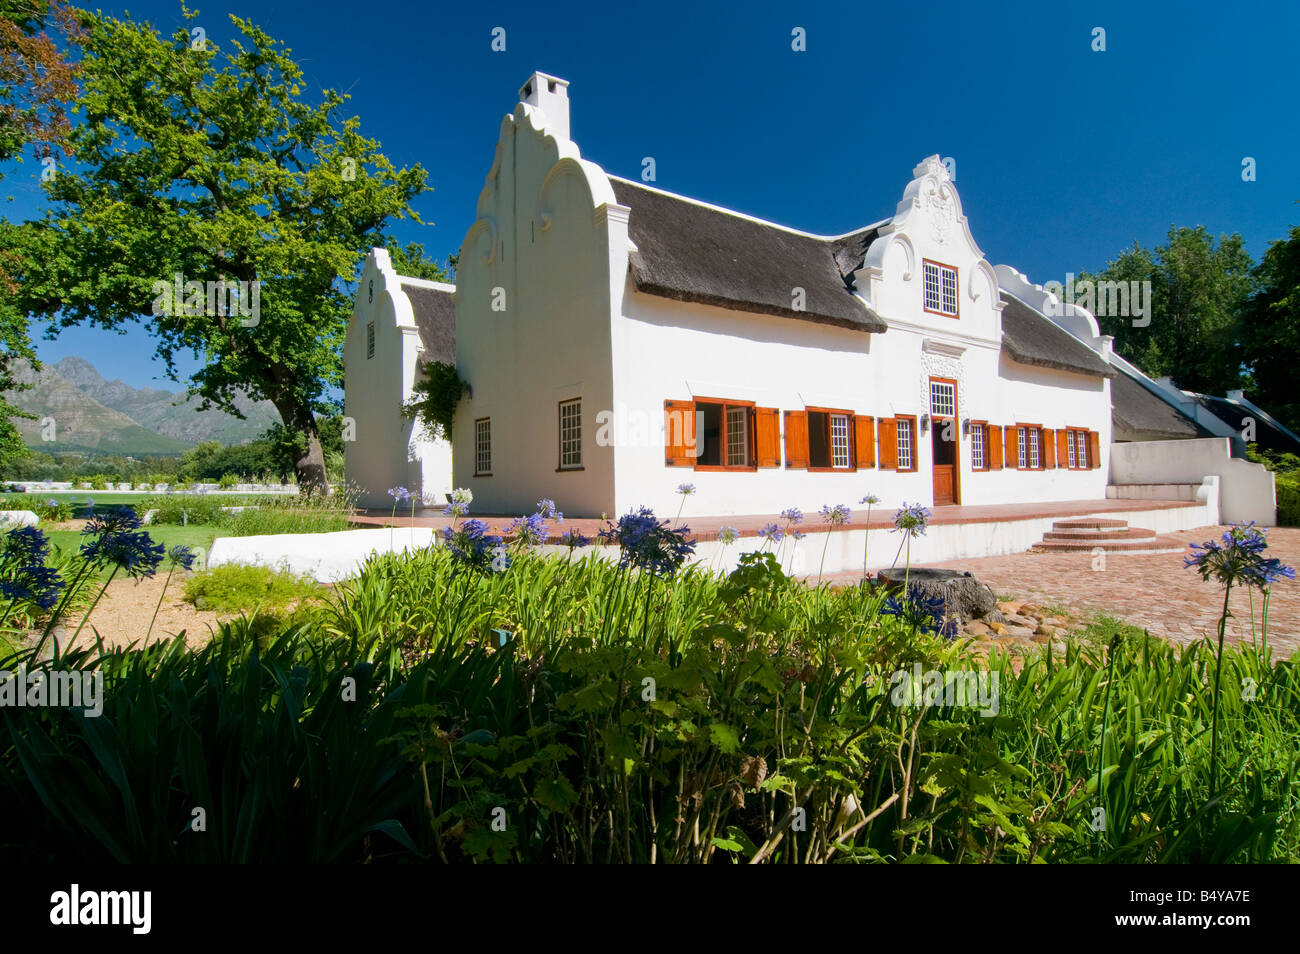 'Ine station wagon Blaauwklippen, edificio principale a Cape stile olandese, Stellenbosch, Western Cape, Sud Africa Foto Stock